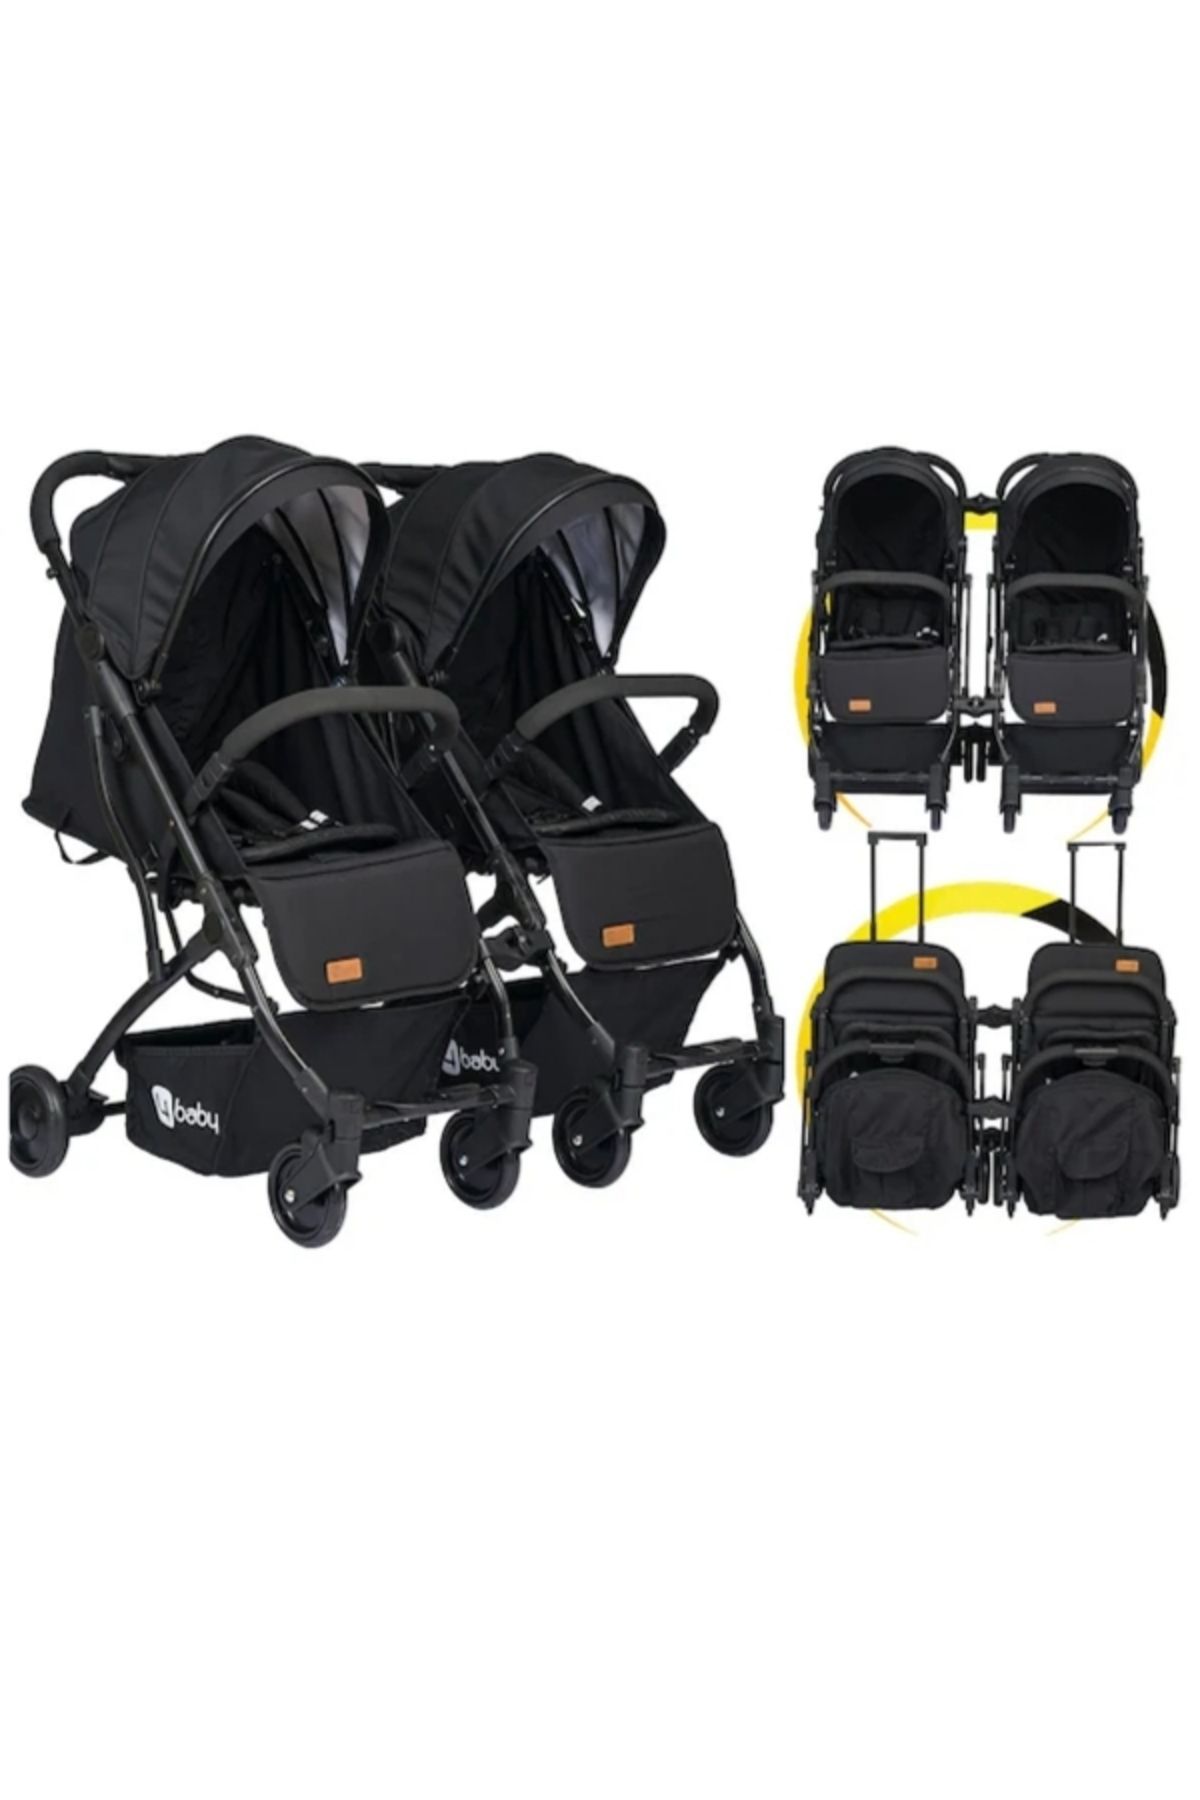 4 Baby Moda bebekler 4 Baby Black Ikiz Bebek Arabası Drone Sky Kabin Sistem 2 Adet Yağmurluk Hediyeli